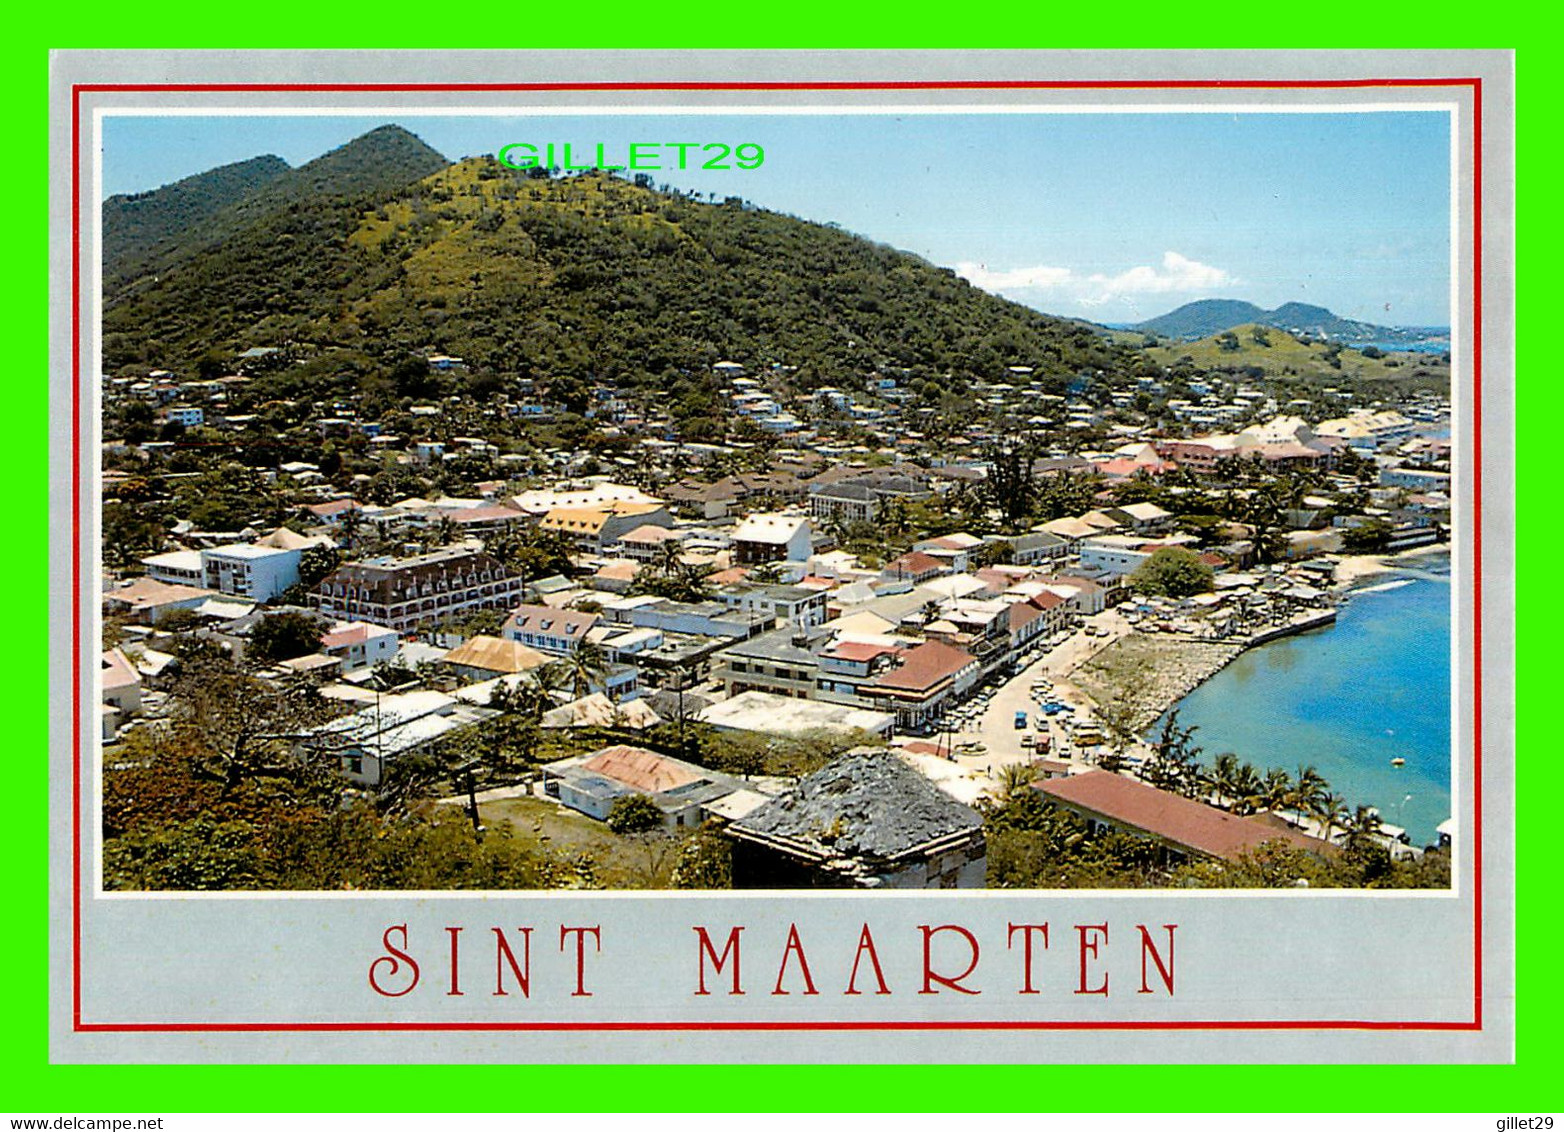 SAINT-MARTIN, ANTILLES NÉERLANDAISES - GENERAL VIEW - PHOTO JOSÉE DIAZ - - Saint-Martin